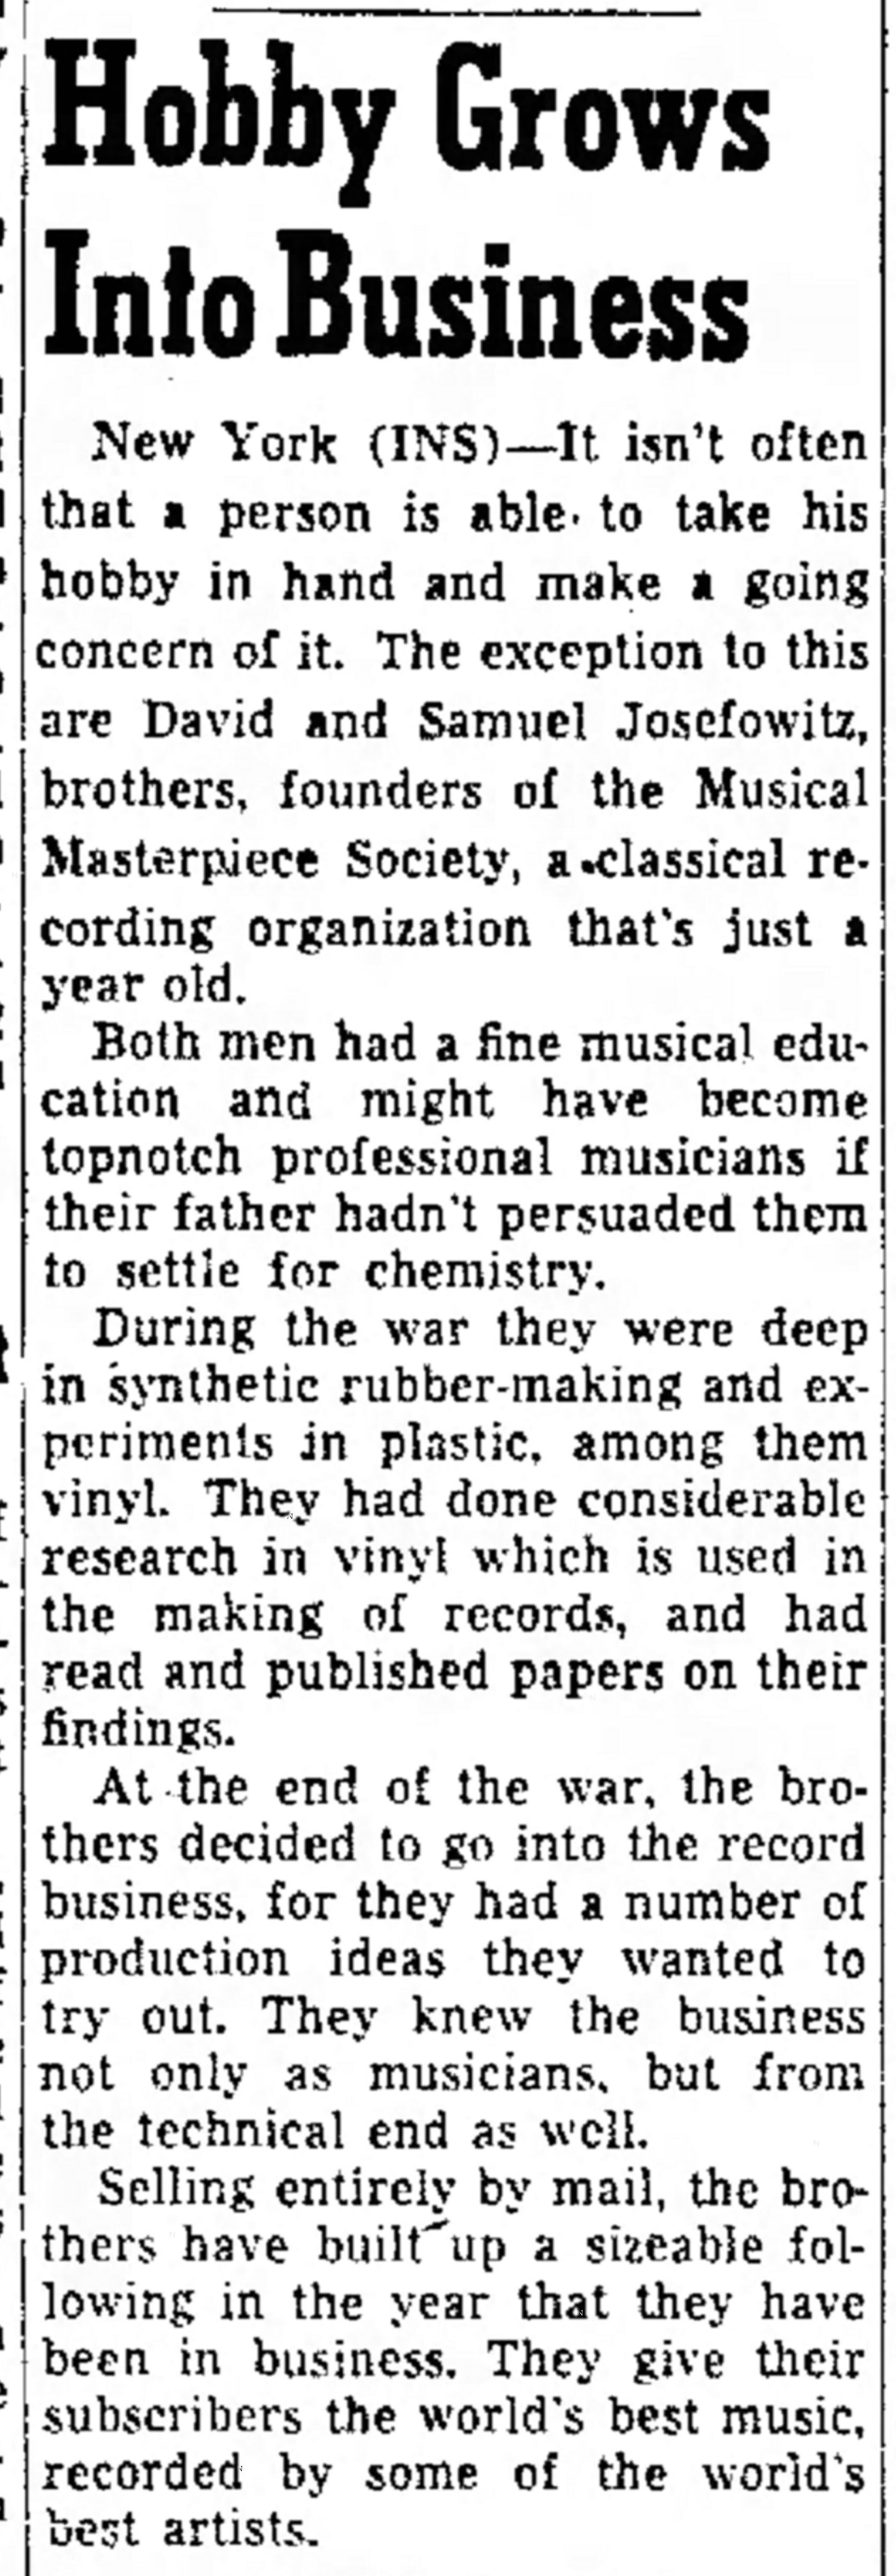 Extrait de: The Times Record, Samedi 16 janvier 1954, page 18